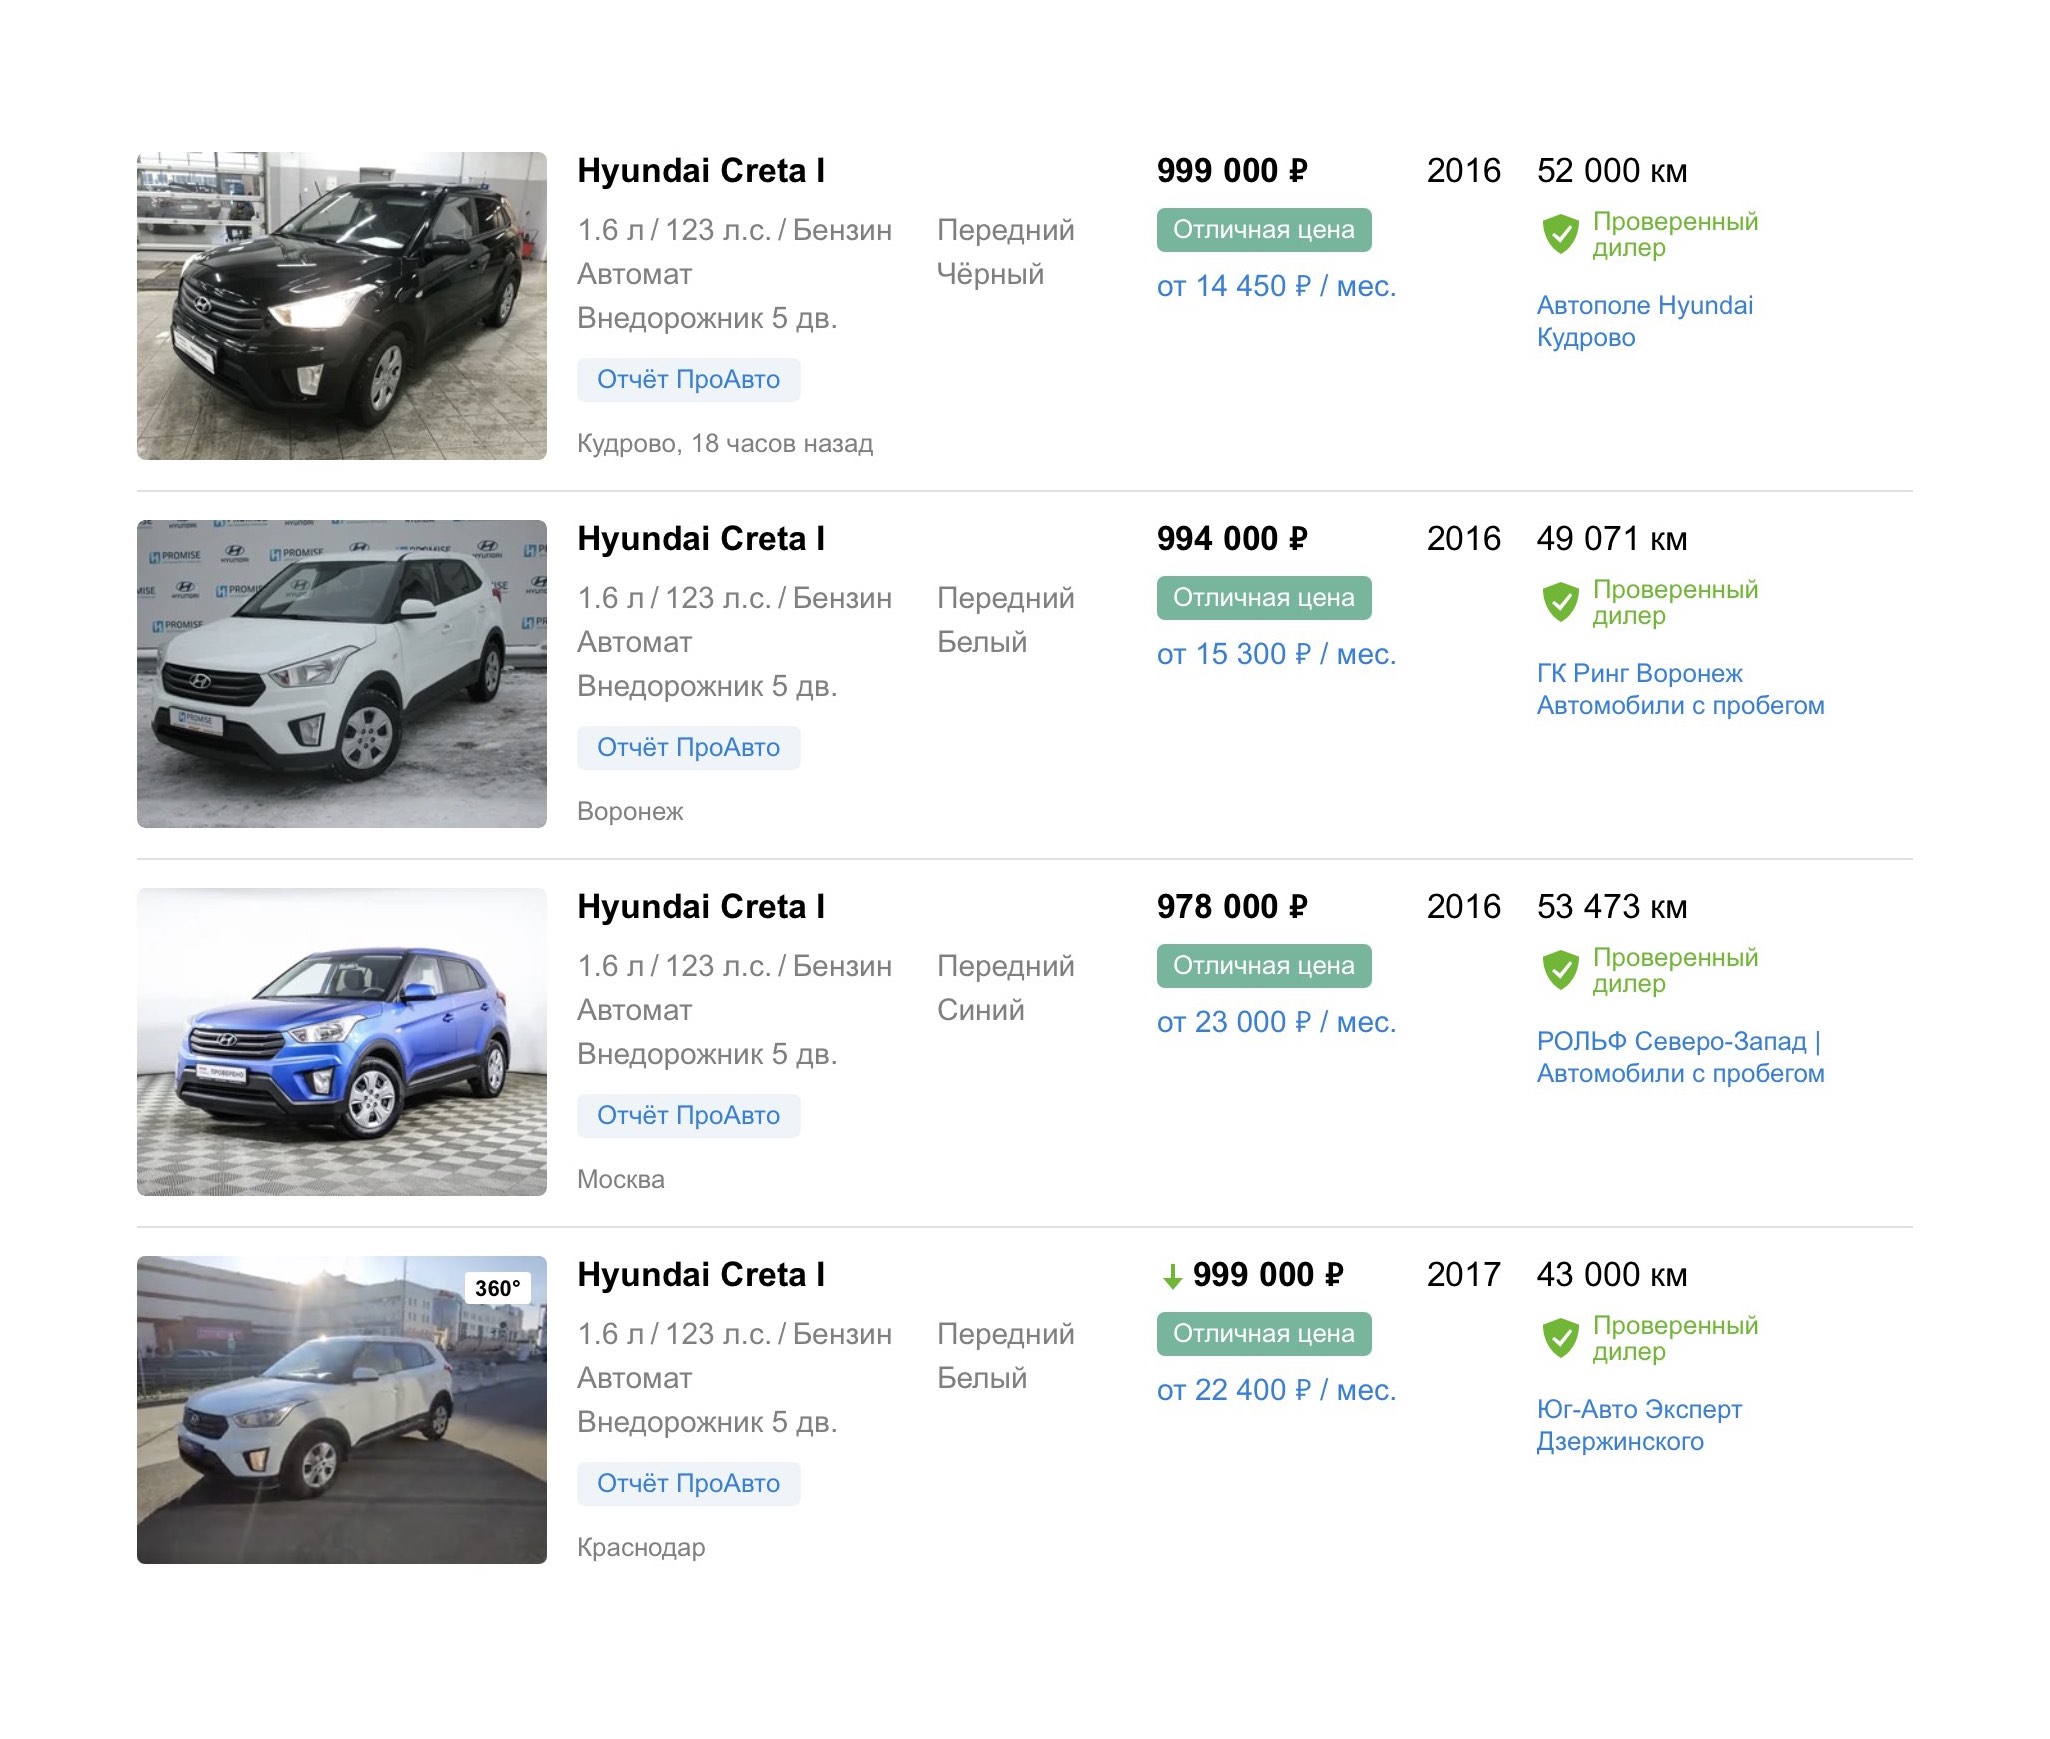 Цены на близкие к моим параметрам авто на сайте «Авто⁠-⁠ру»